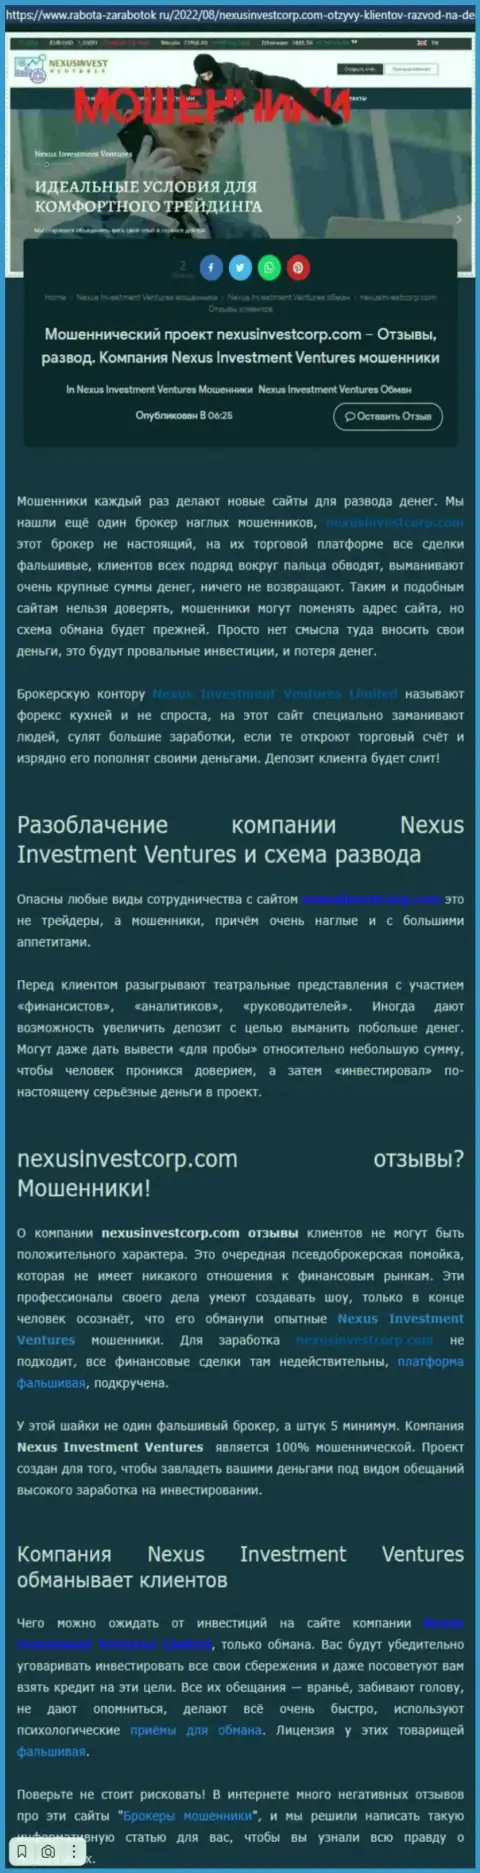 Если же нет желания оказаться очередной жертвой Nexus Investment Ventures, бегите от них подальше (обзор проделок)